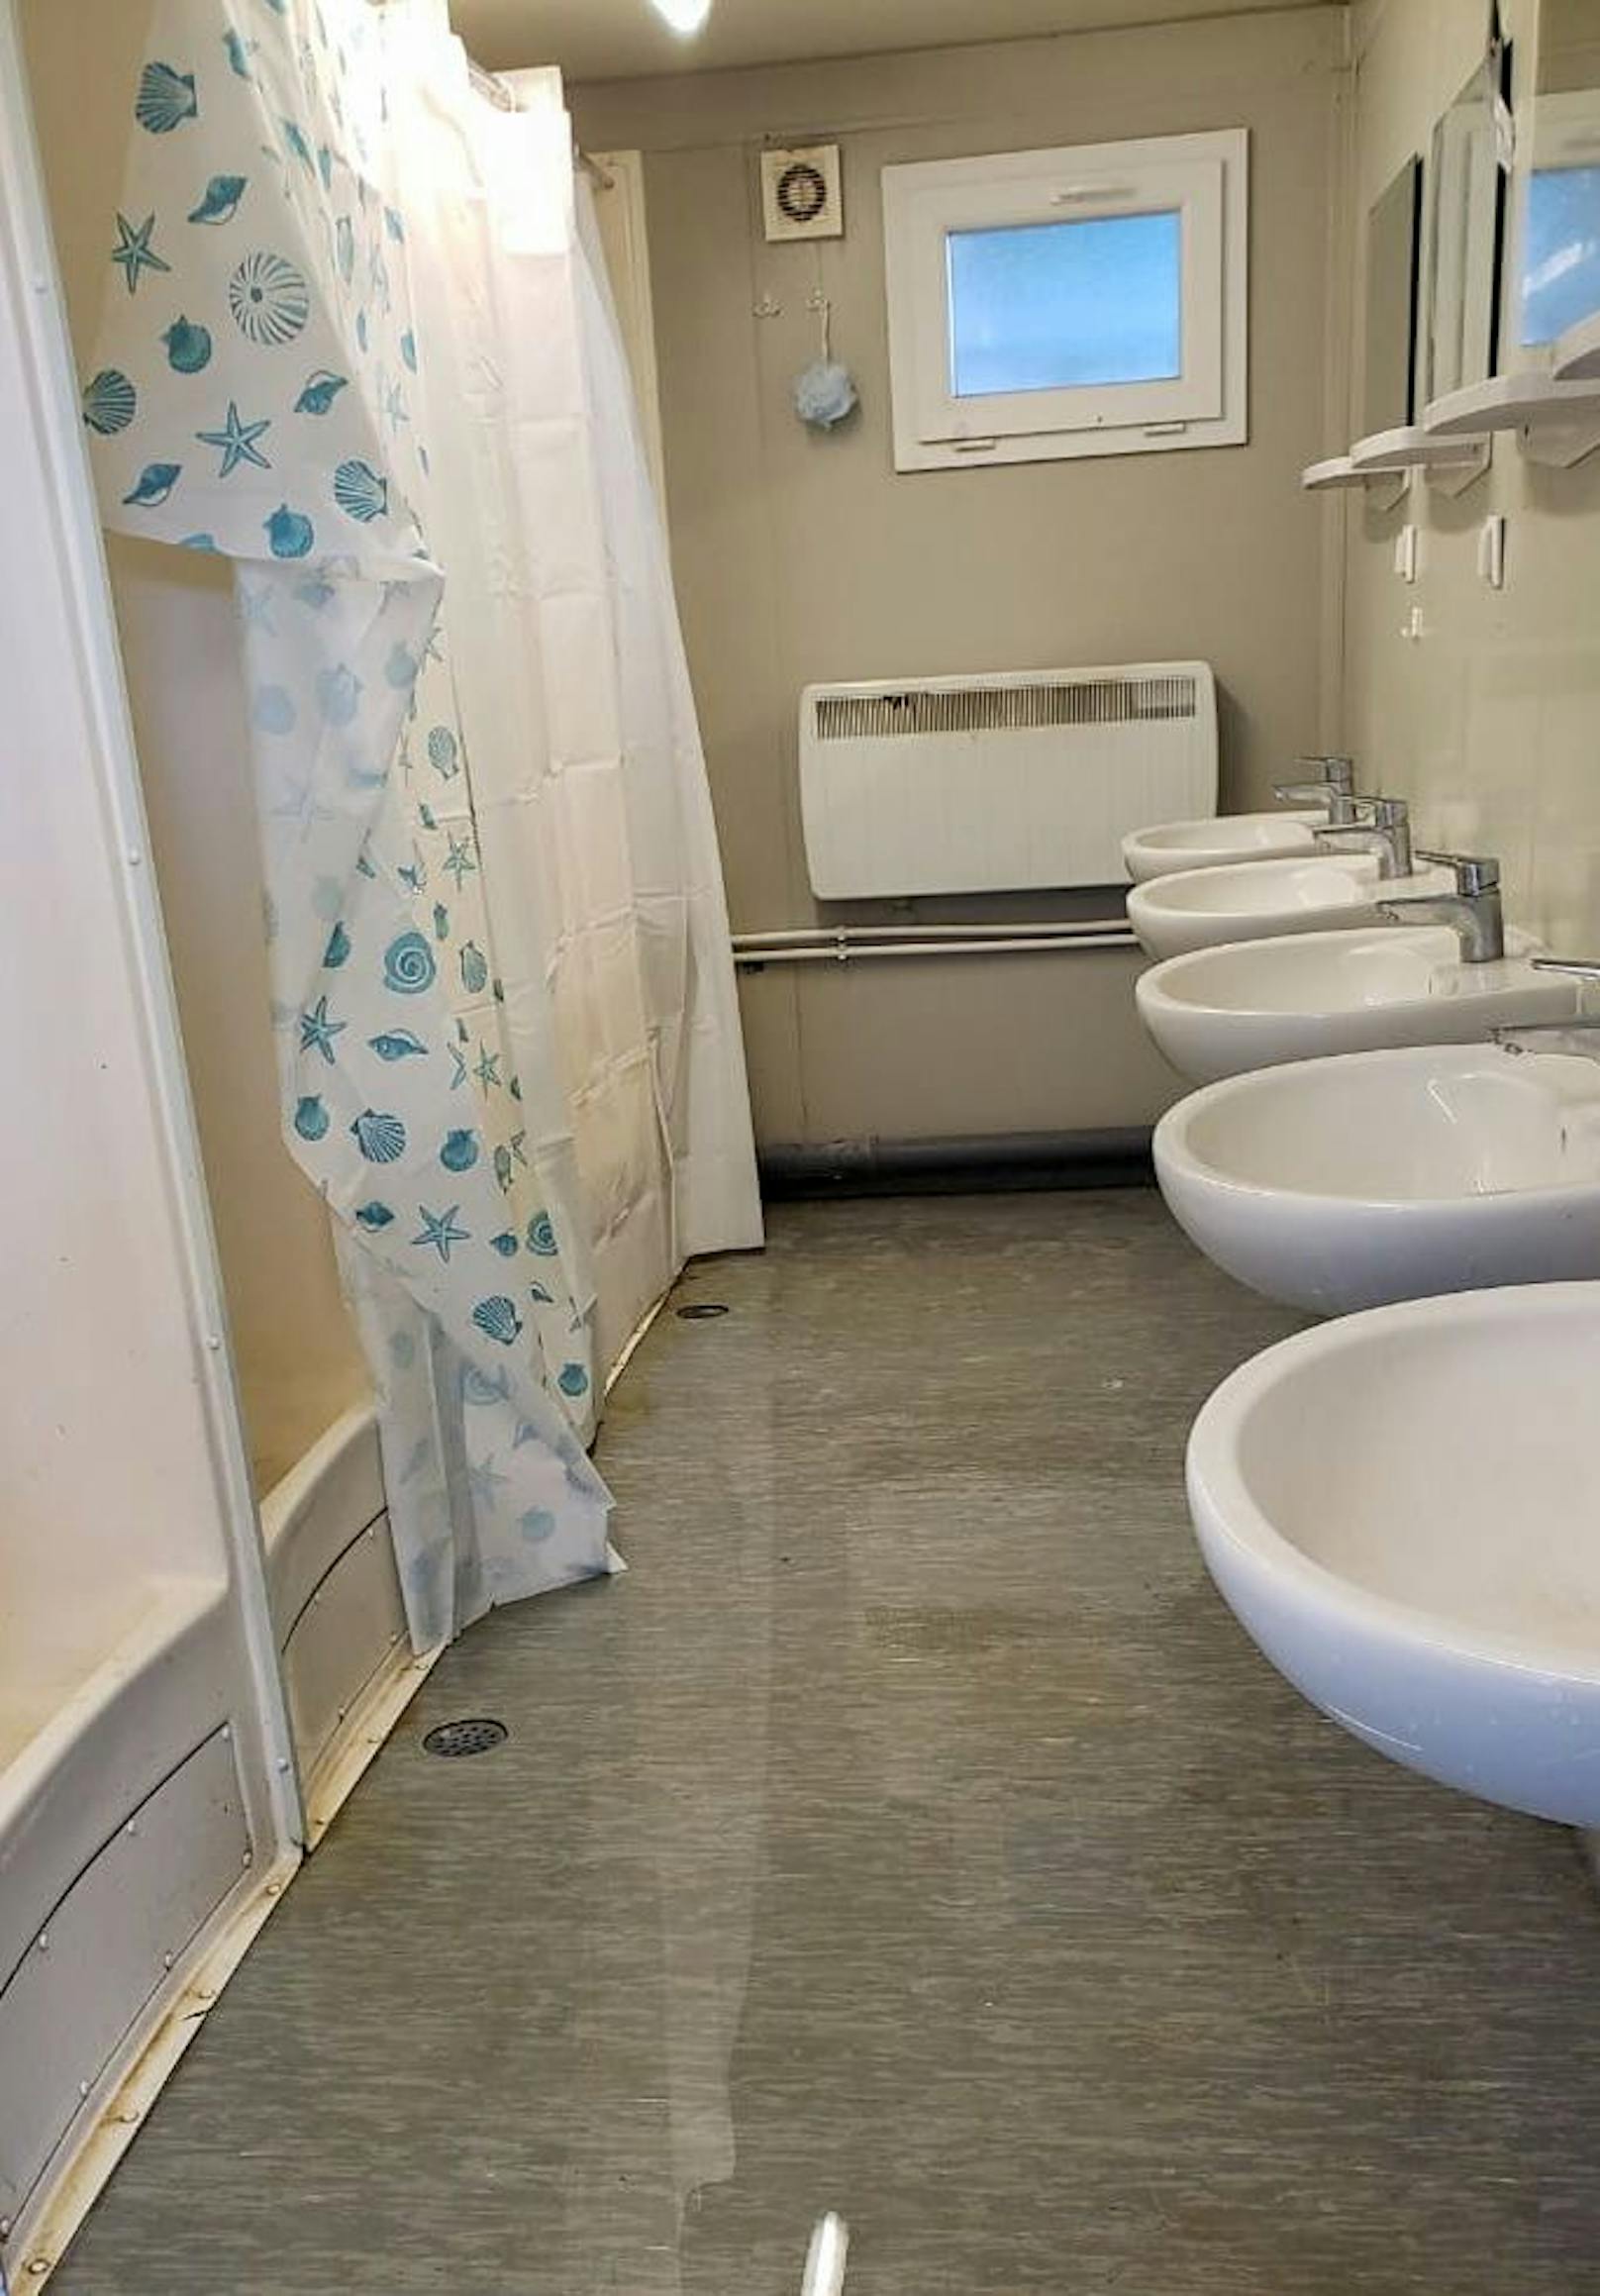 Für knapp 300 Bewohner gibt es laut Kritikern nur acht Toiletten und acht Duschen.